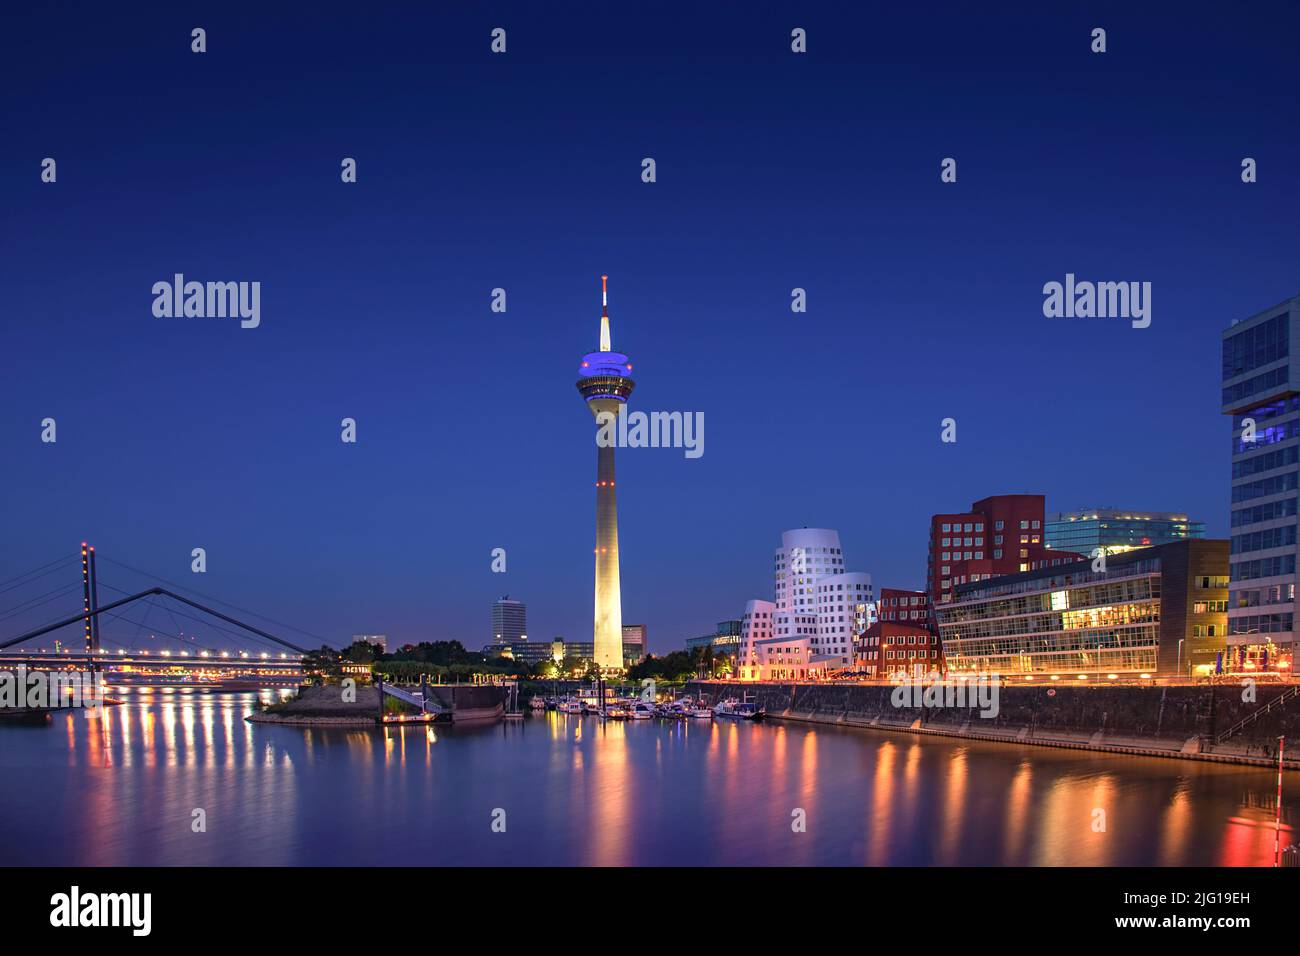 Düsseldorfer Medienhafen mit dem Fernsehturm Rheinturm und den berühmten Gehry-Gebäuden bei Nacht Stockfoto